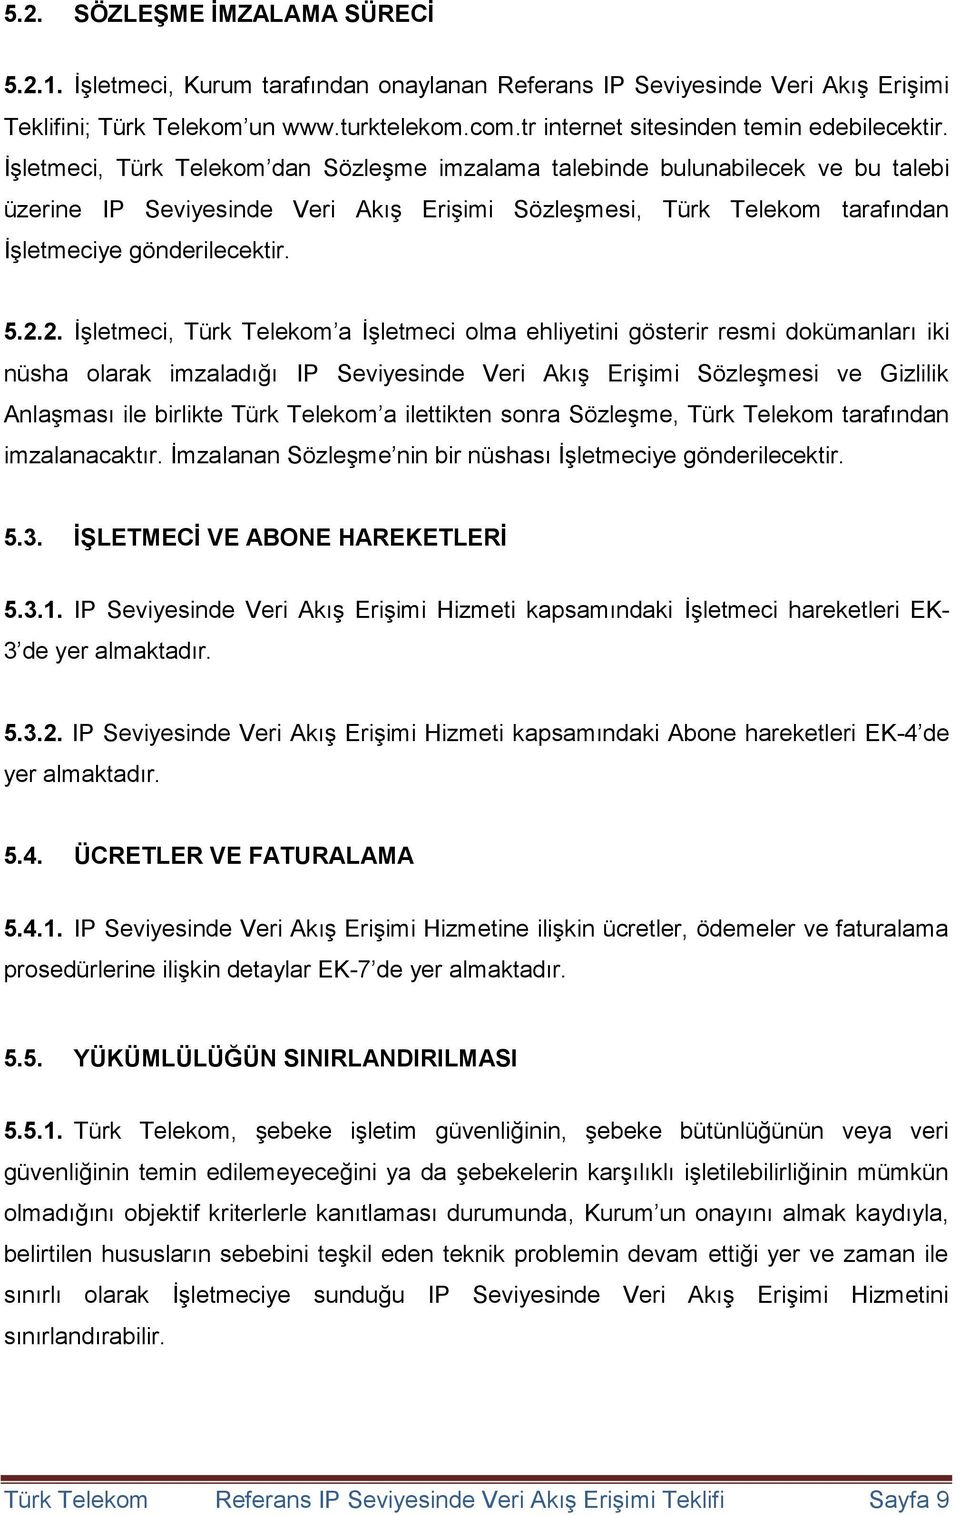 İşletmeci, Türk Telekom dan Sözleşme imzalama talebinde bulunabilecek ve bu talebi üzerine IP Seviyesinde Veri Akış Erişimi Sözleşmesi, Türk Telekom tarafından İşletmeciye gönderilecektir. 5.2.